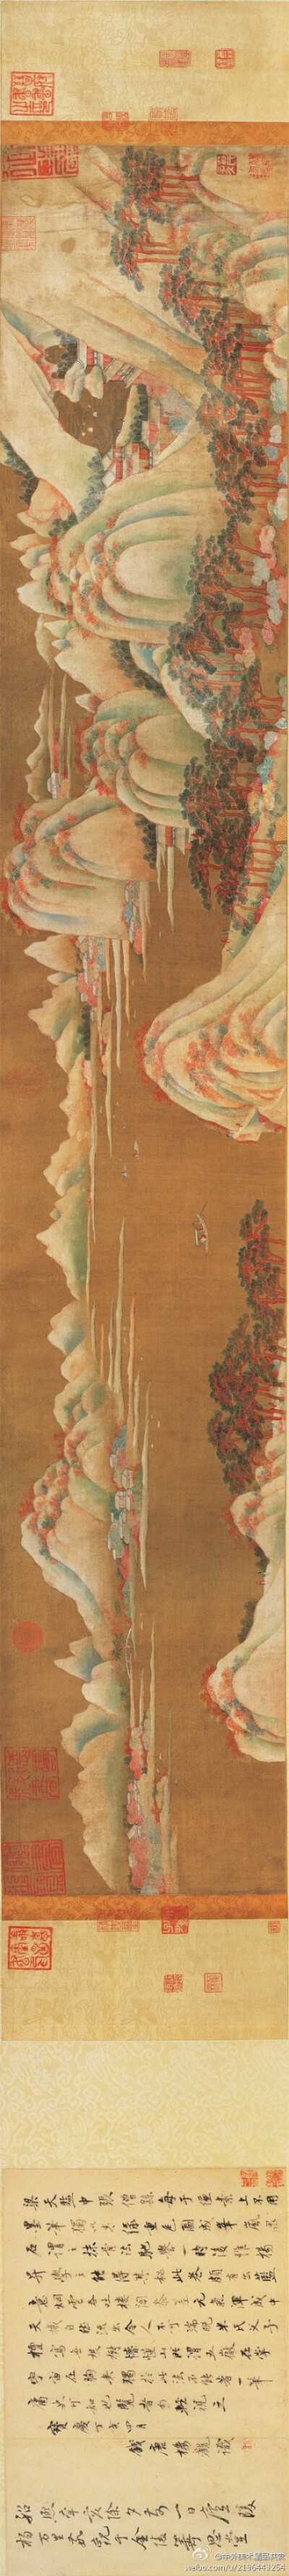 【國畫1428】 中國歷代繪畫長卷 32 —— 唐 楊 昇（傳）《山水畫圖卷》，絹本設色，現藏台北故宮博物館。